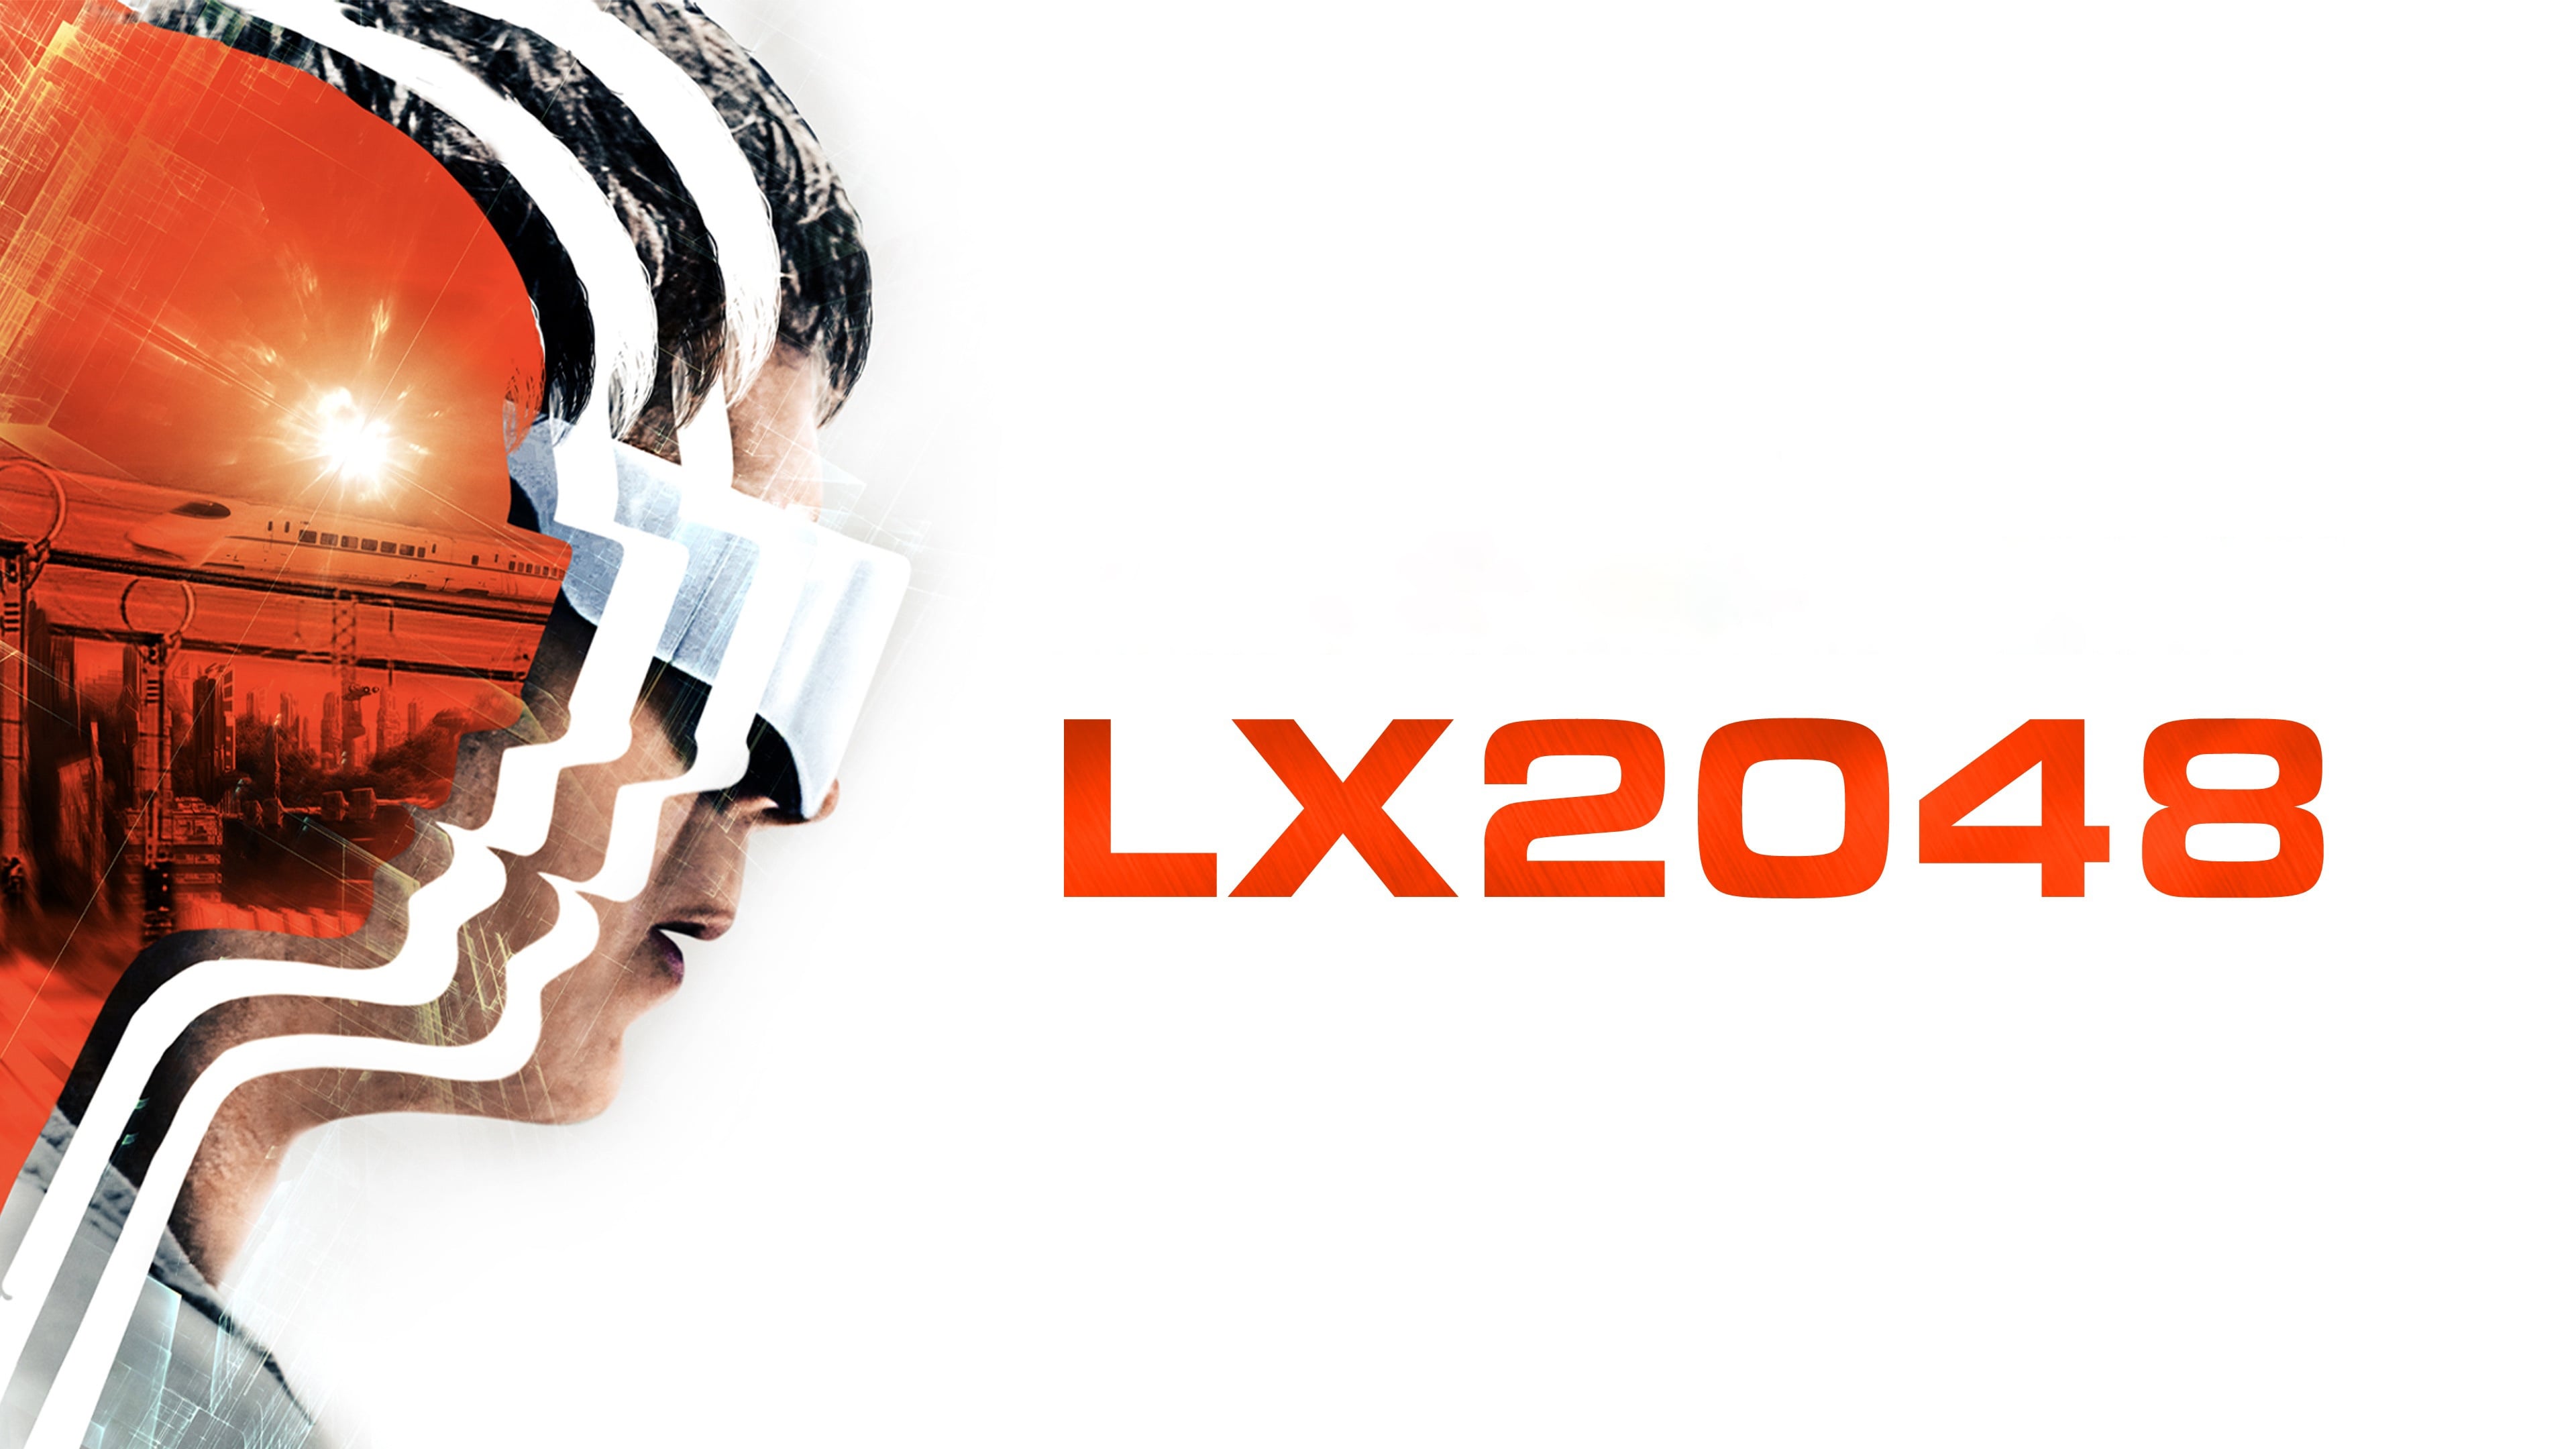 LX 2048 (2020)